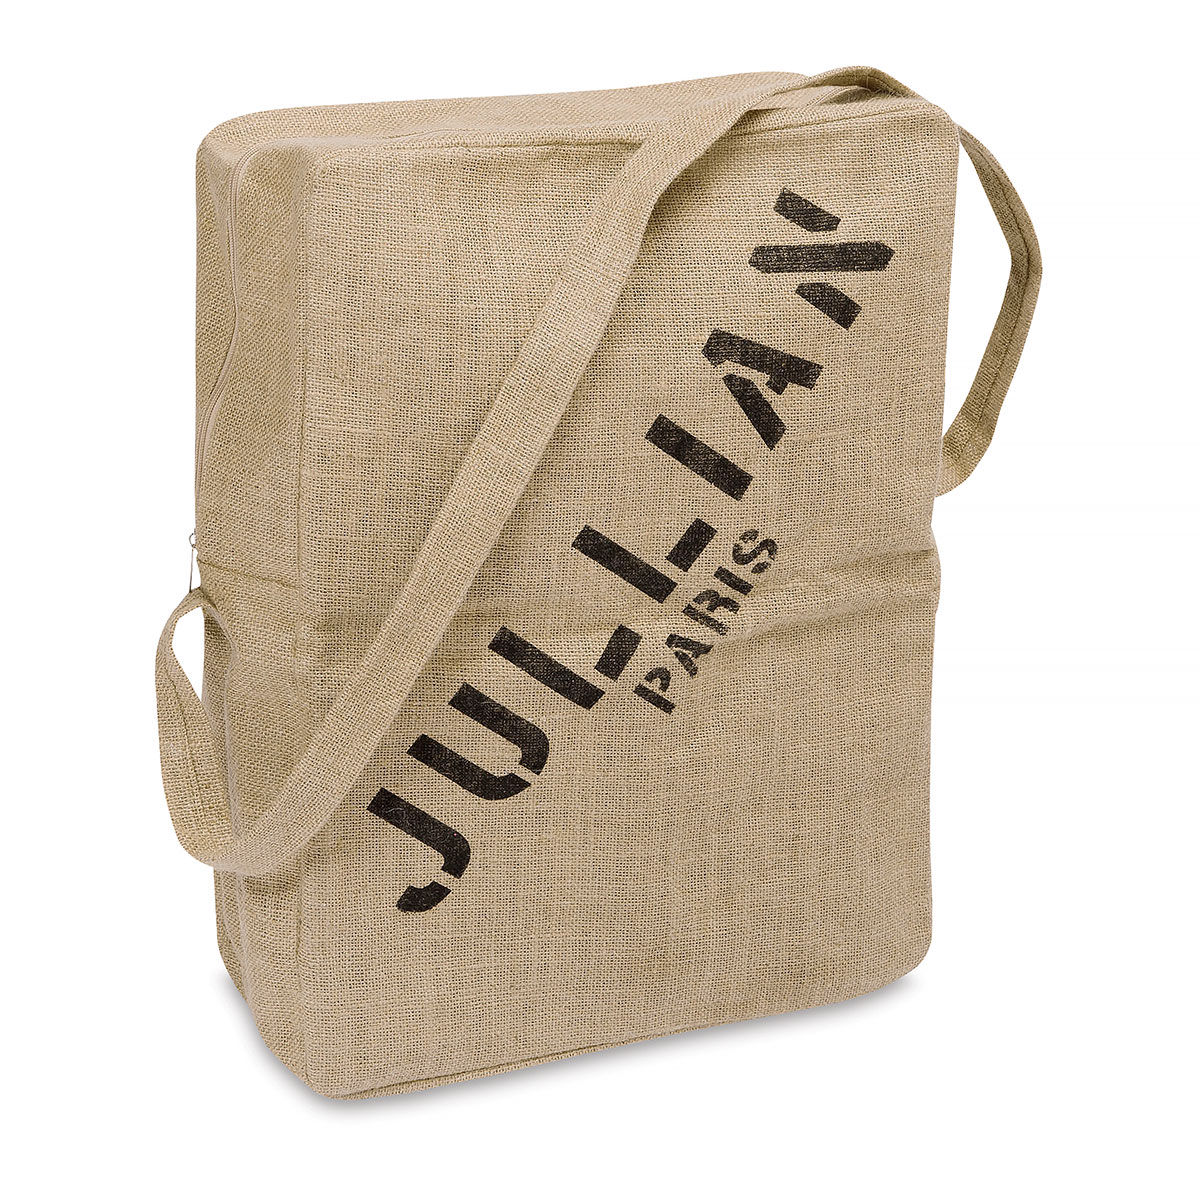 Jullian : Full Vintage French Easel : Oak With Jute Bag - Jullian